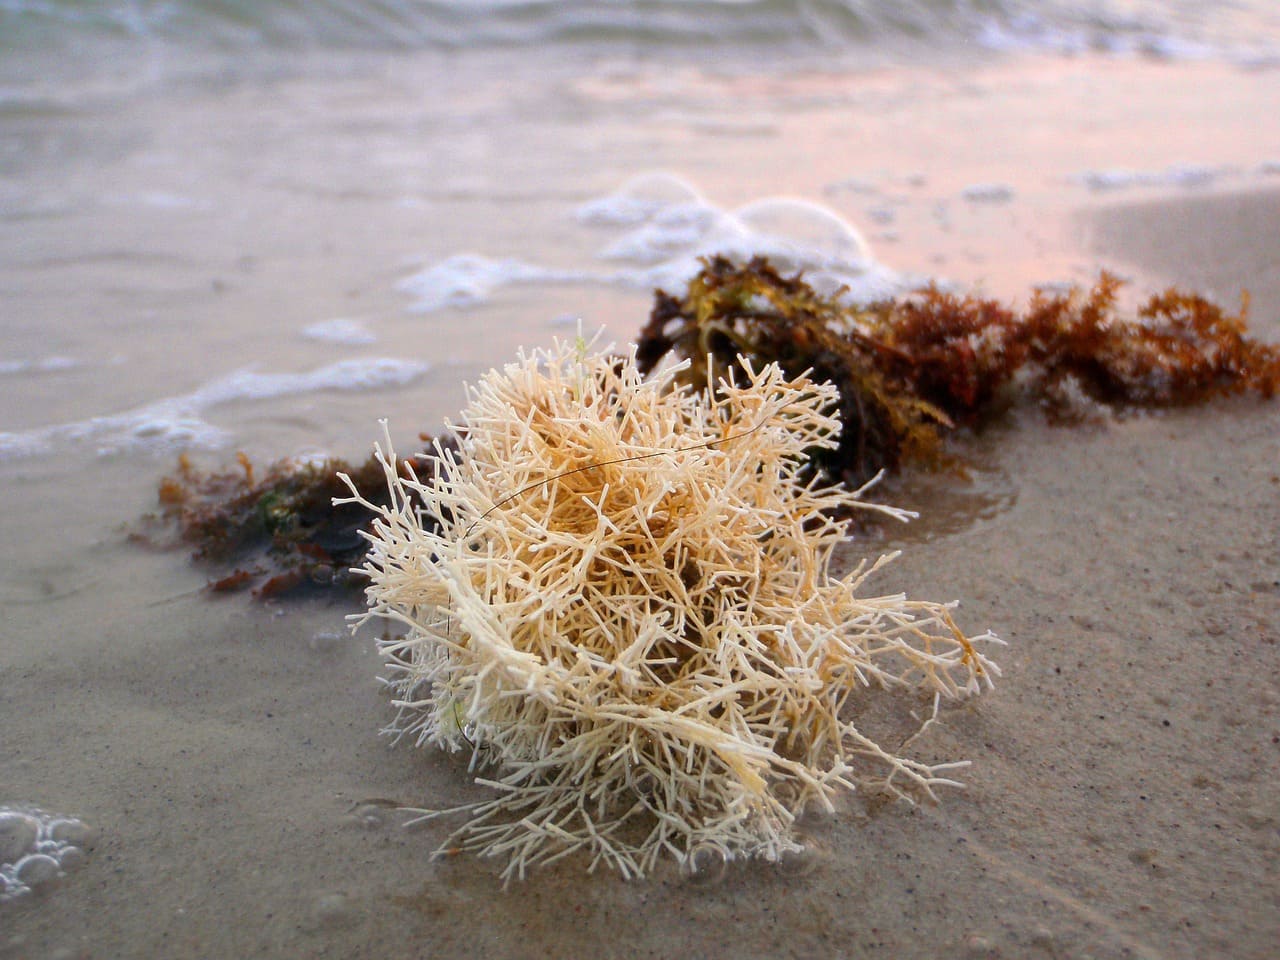 Différentes algues marines sur la plage.